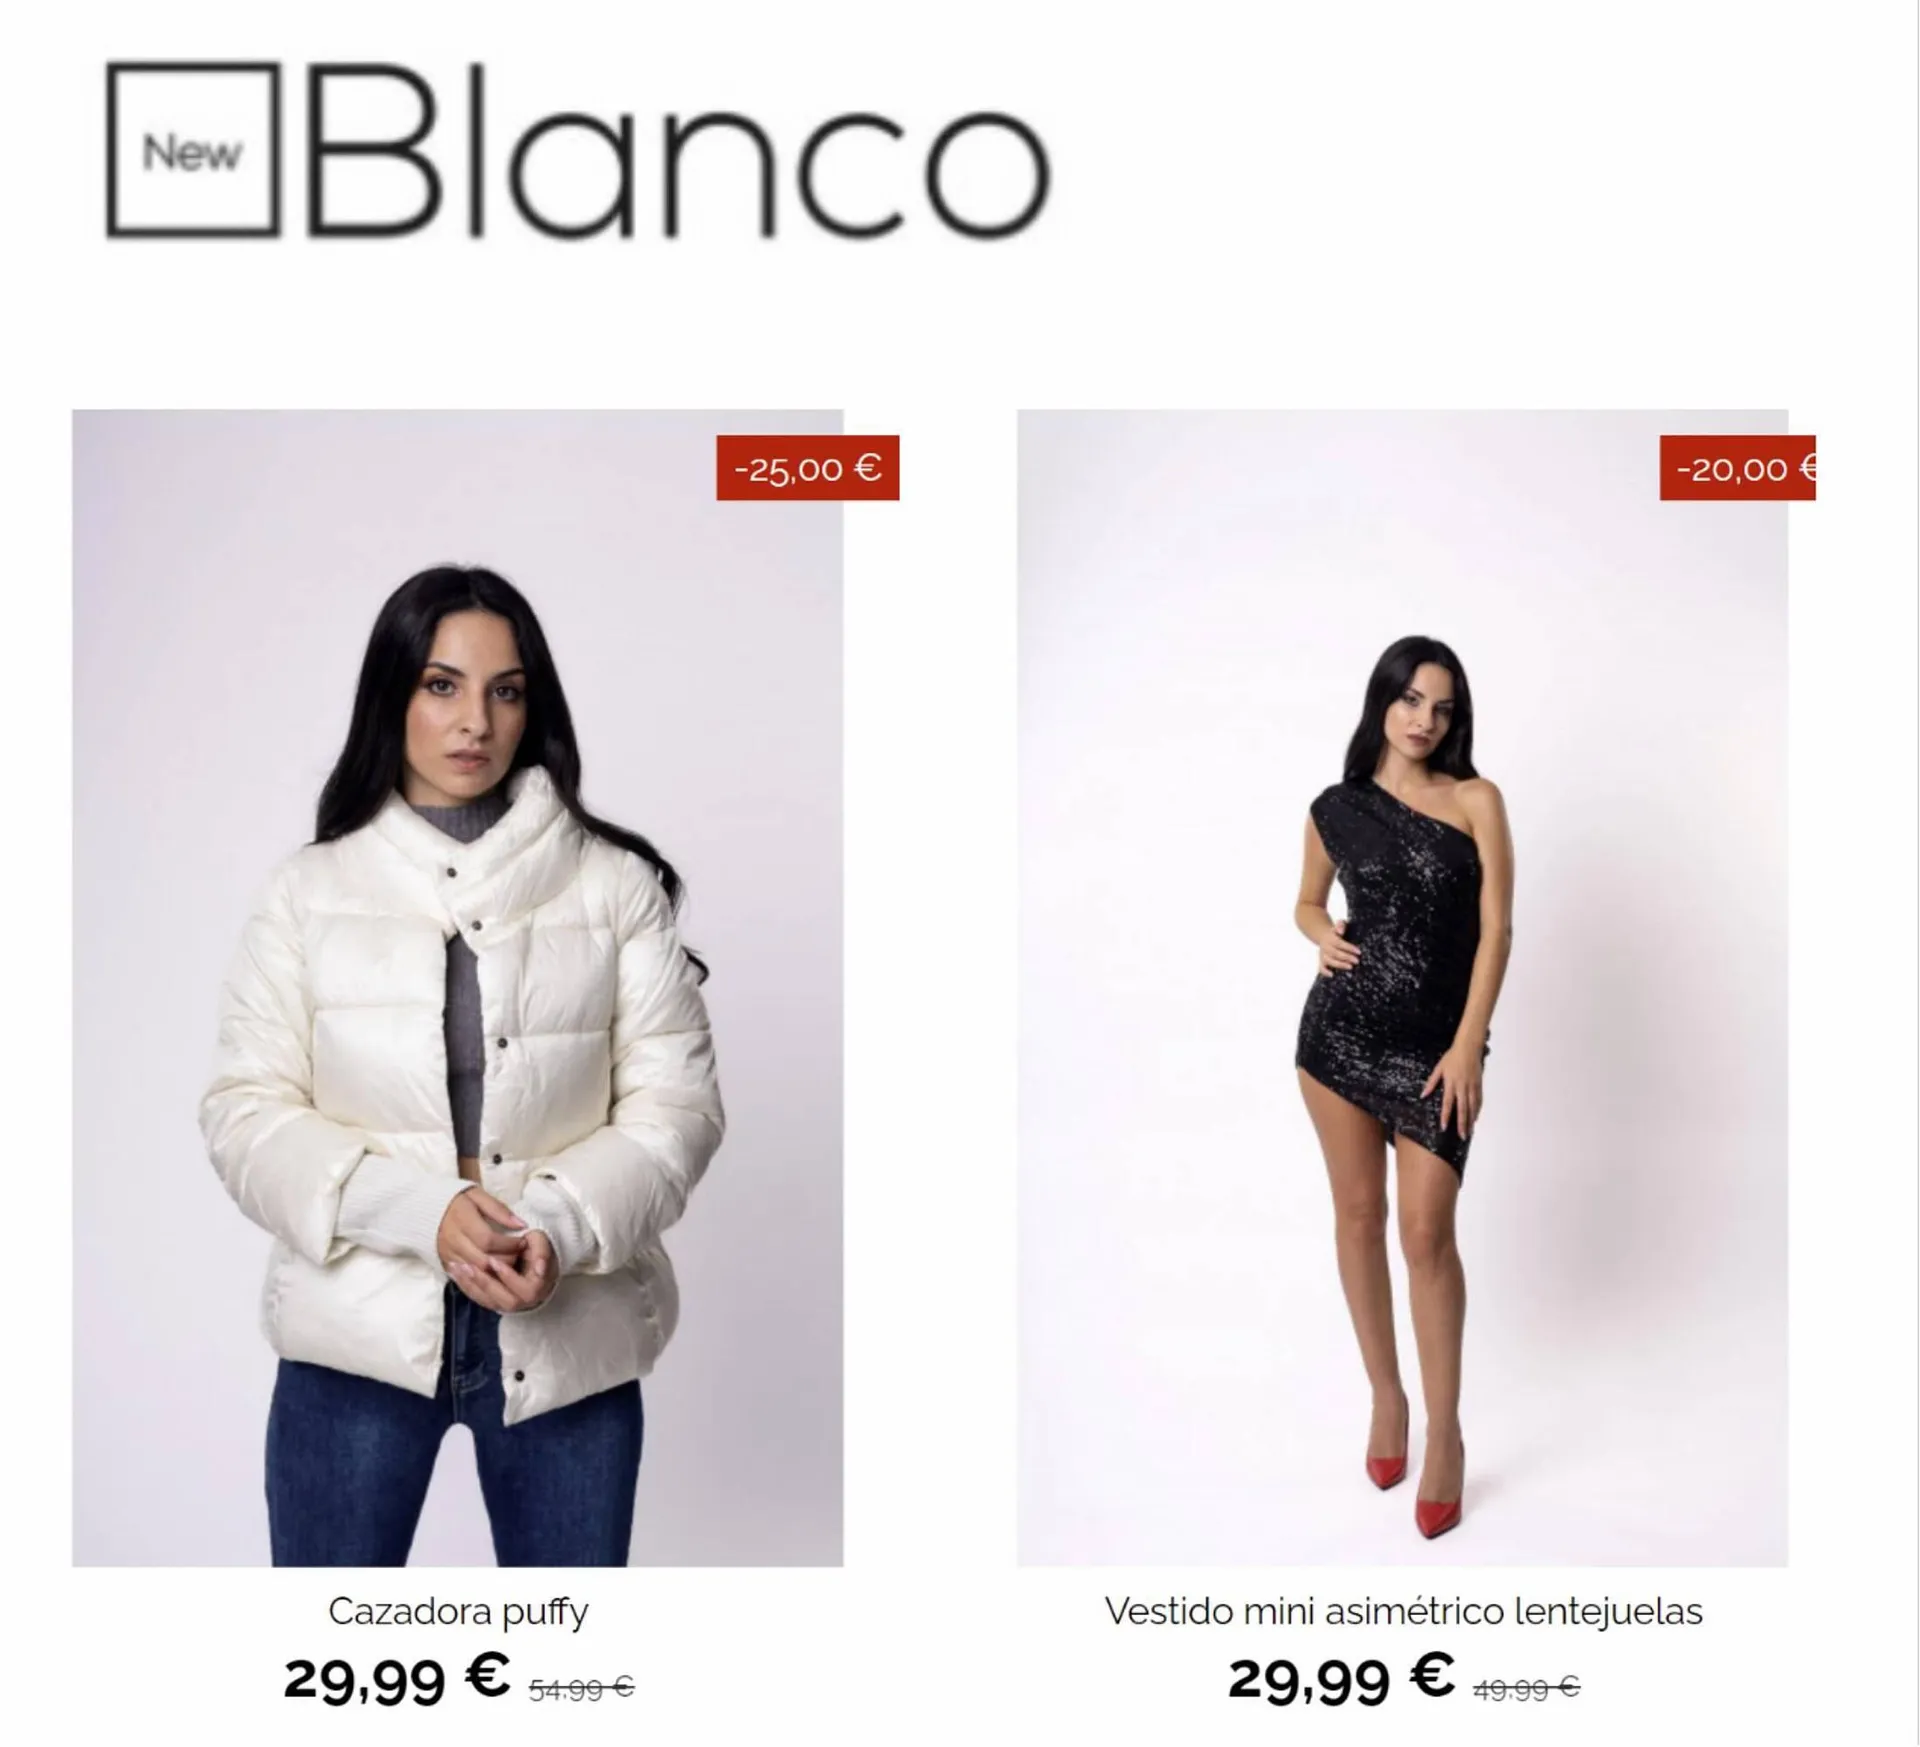 Catálogo New Blanco - 3